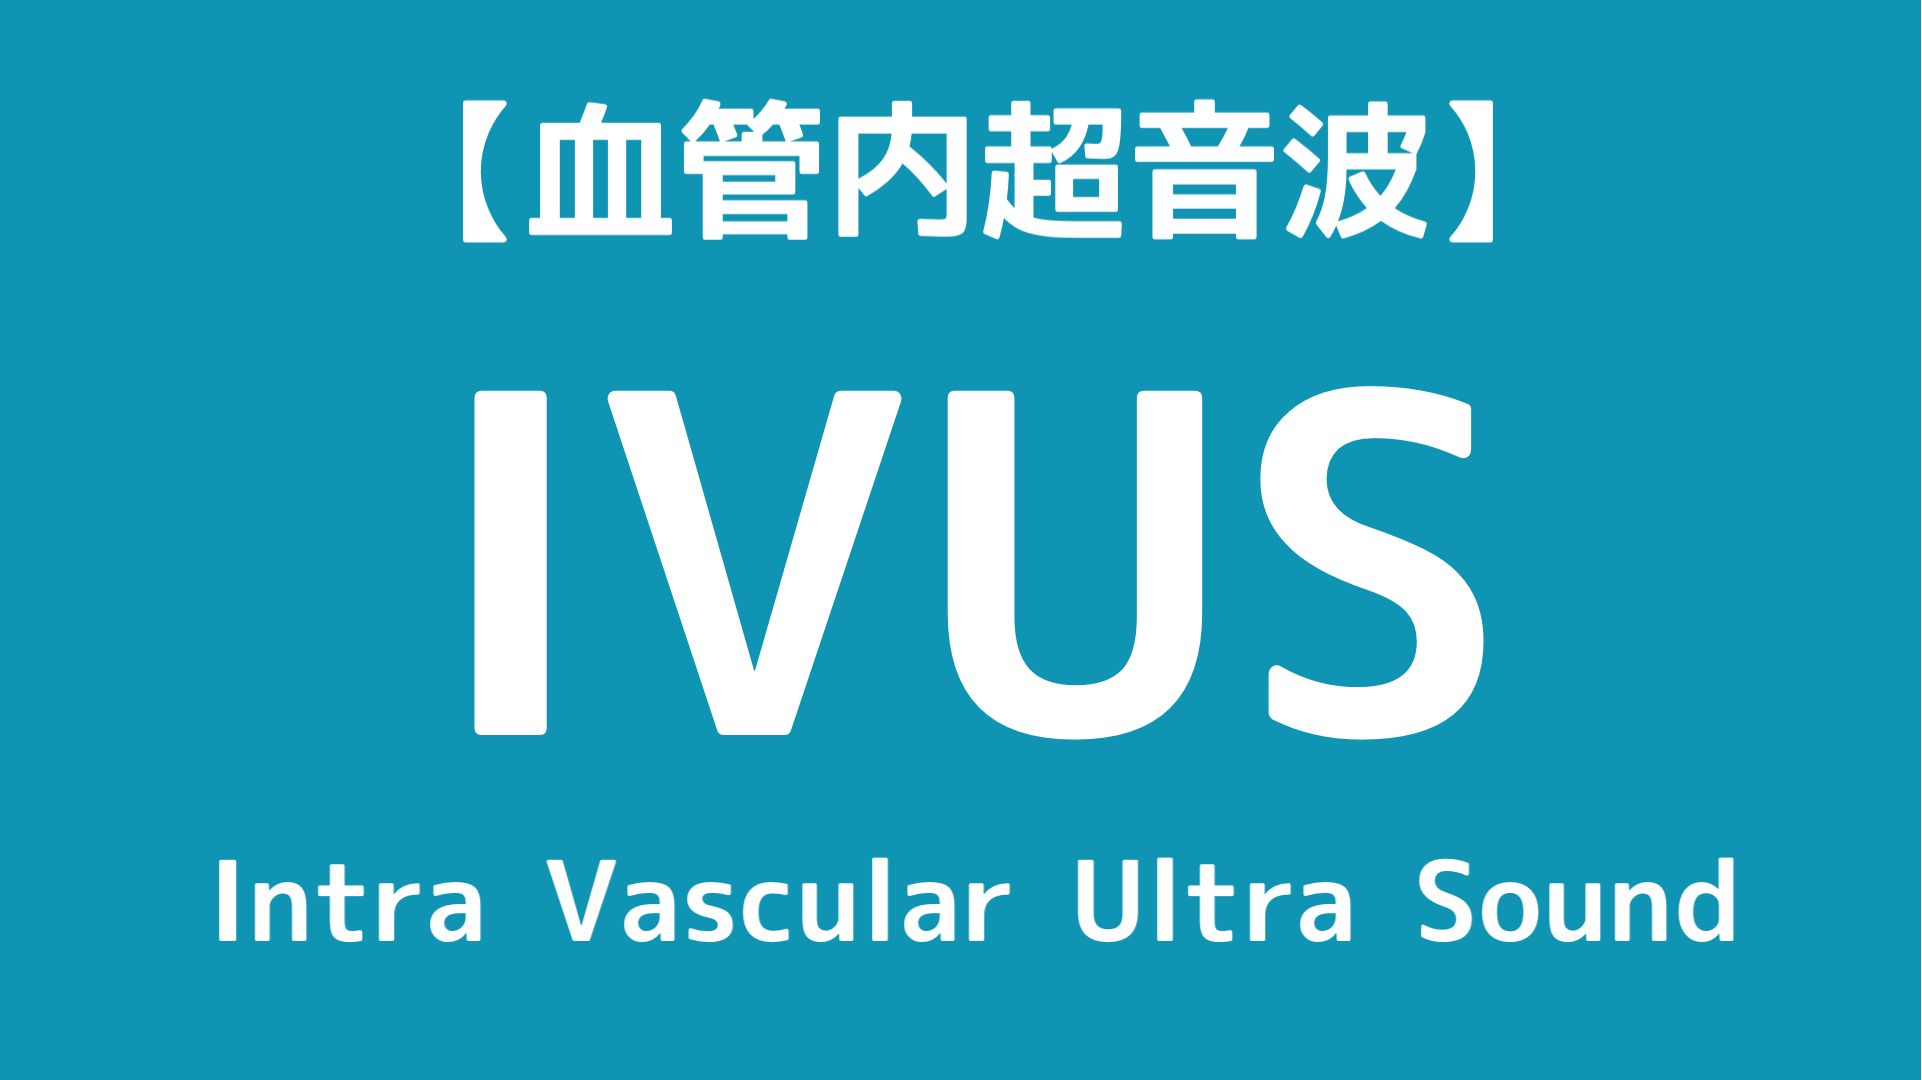 心カテ】PCIで使用するIVUSの原理と臨床